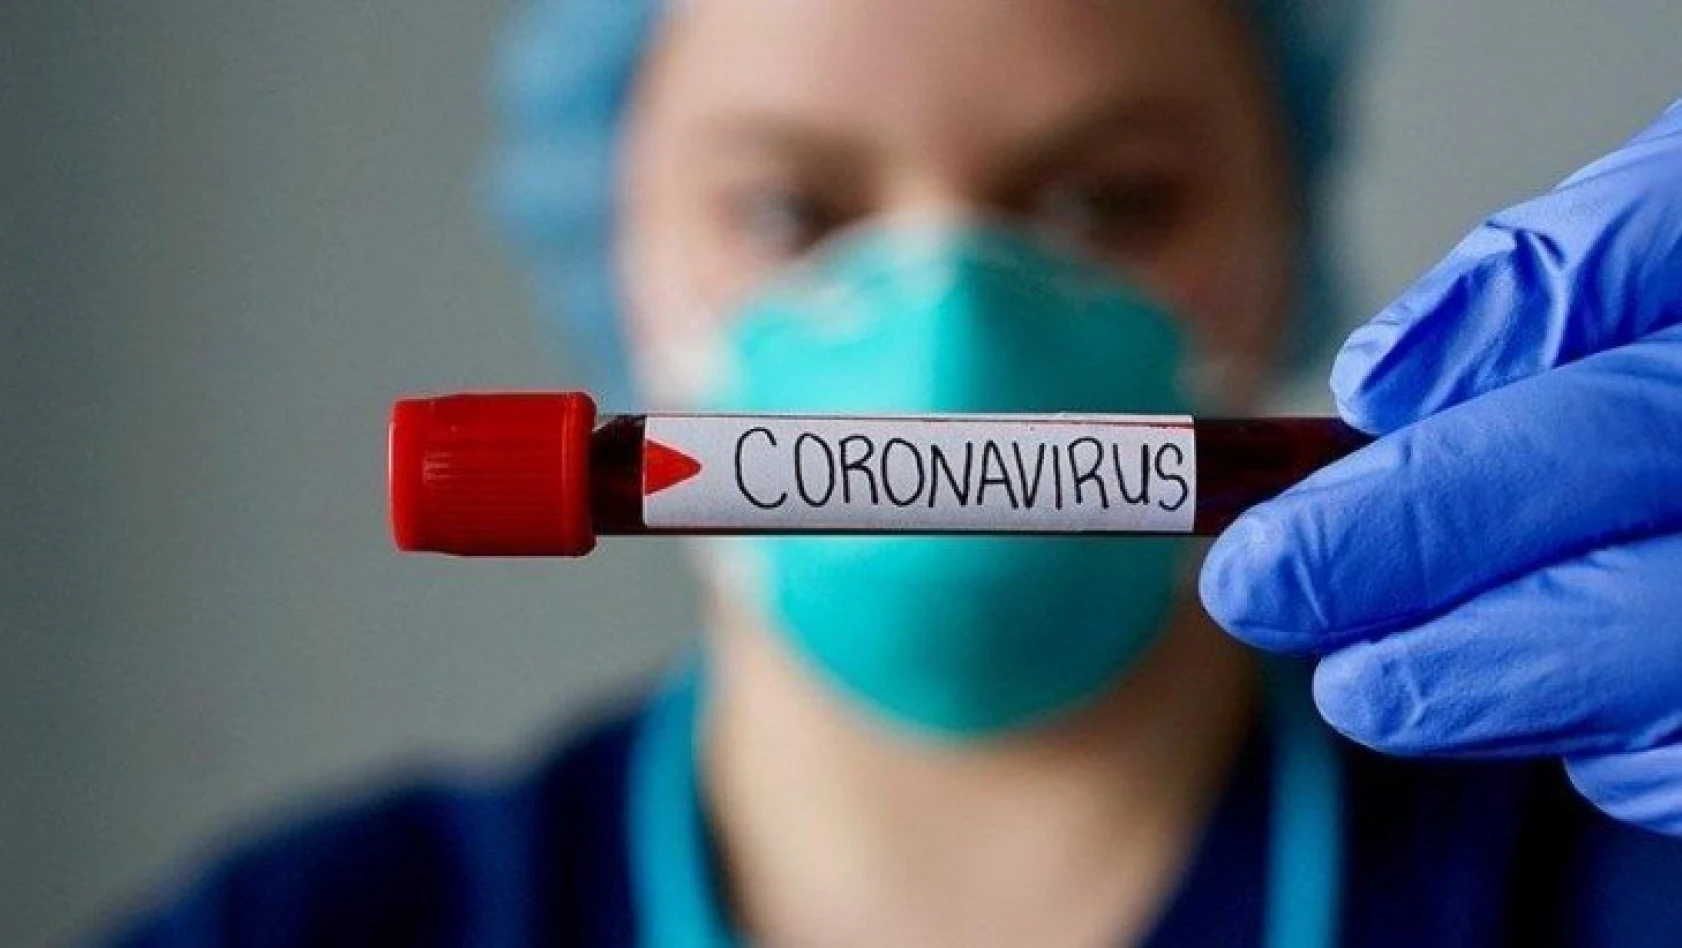 Coronavirüs salgınında Türkiye için kritik gün belli oldu! Durmazsa tedbirler sertleşecek!